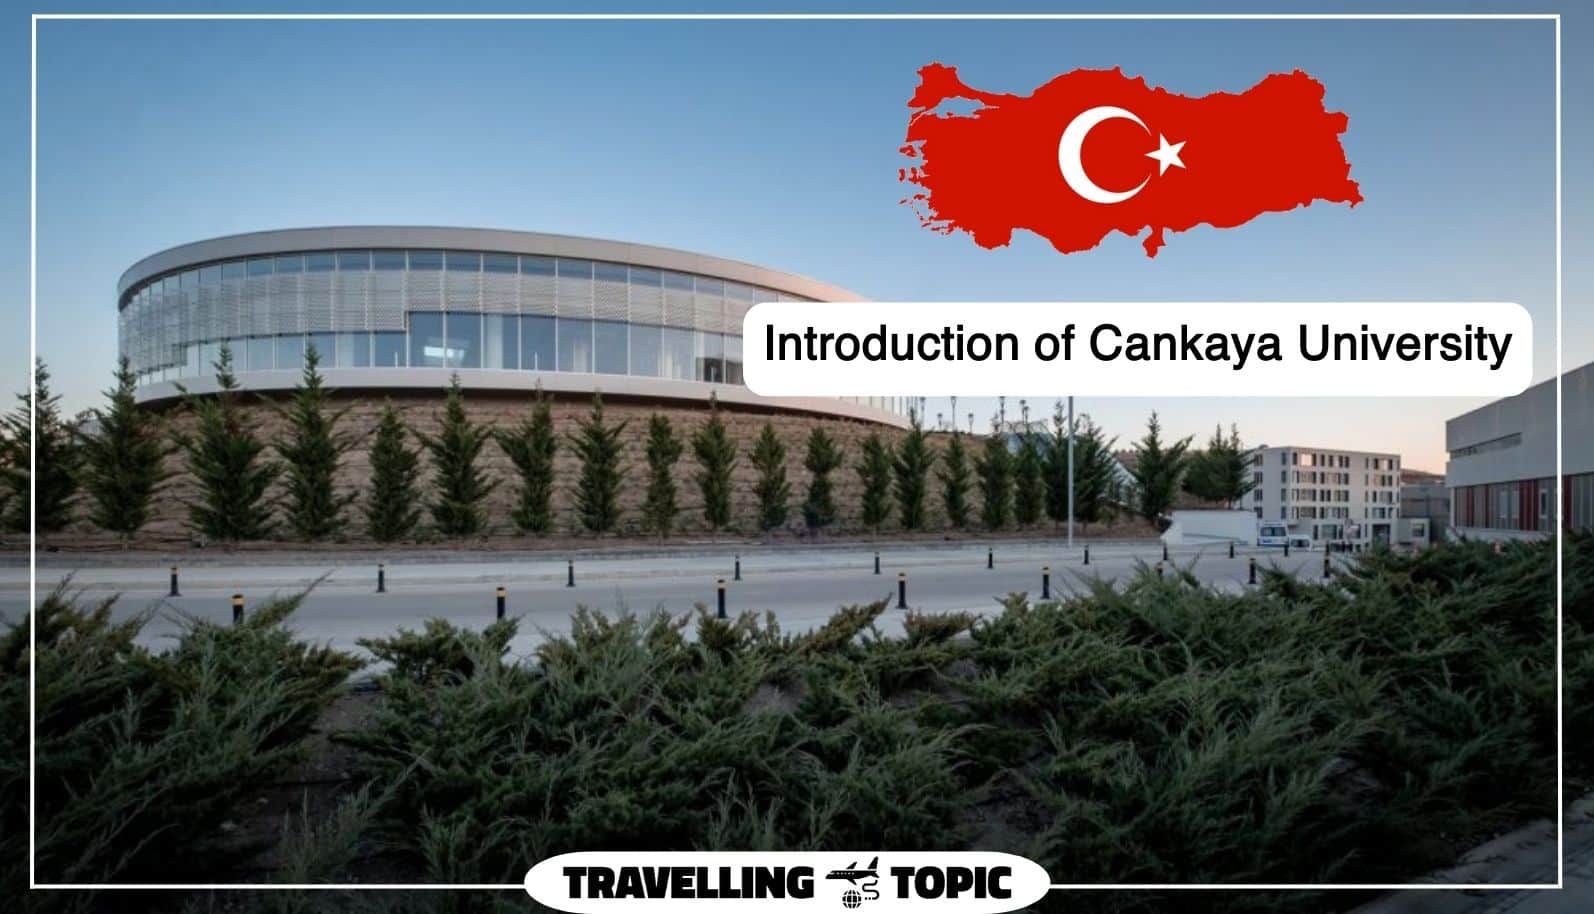 Introduction of Cankaya University